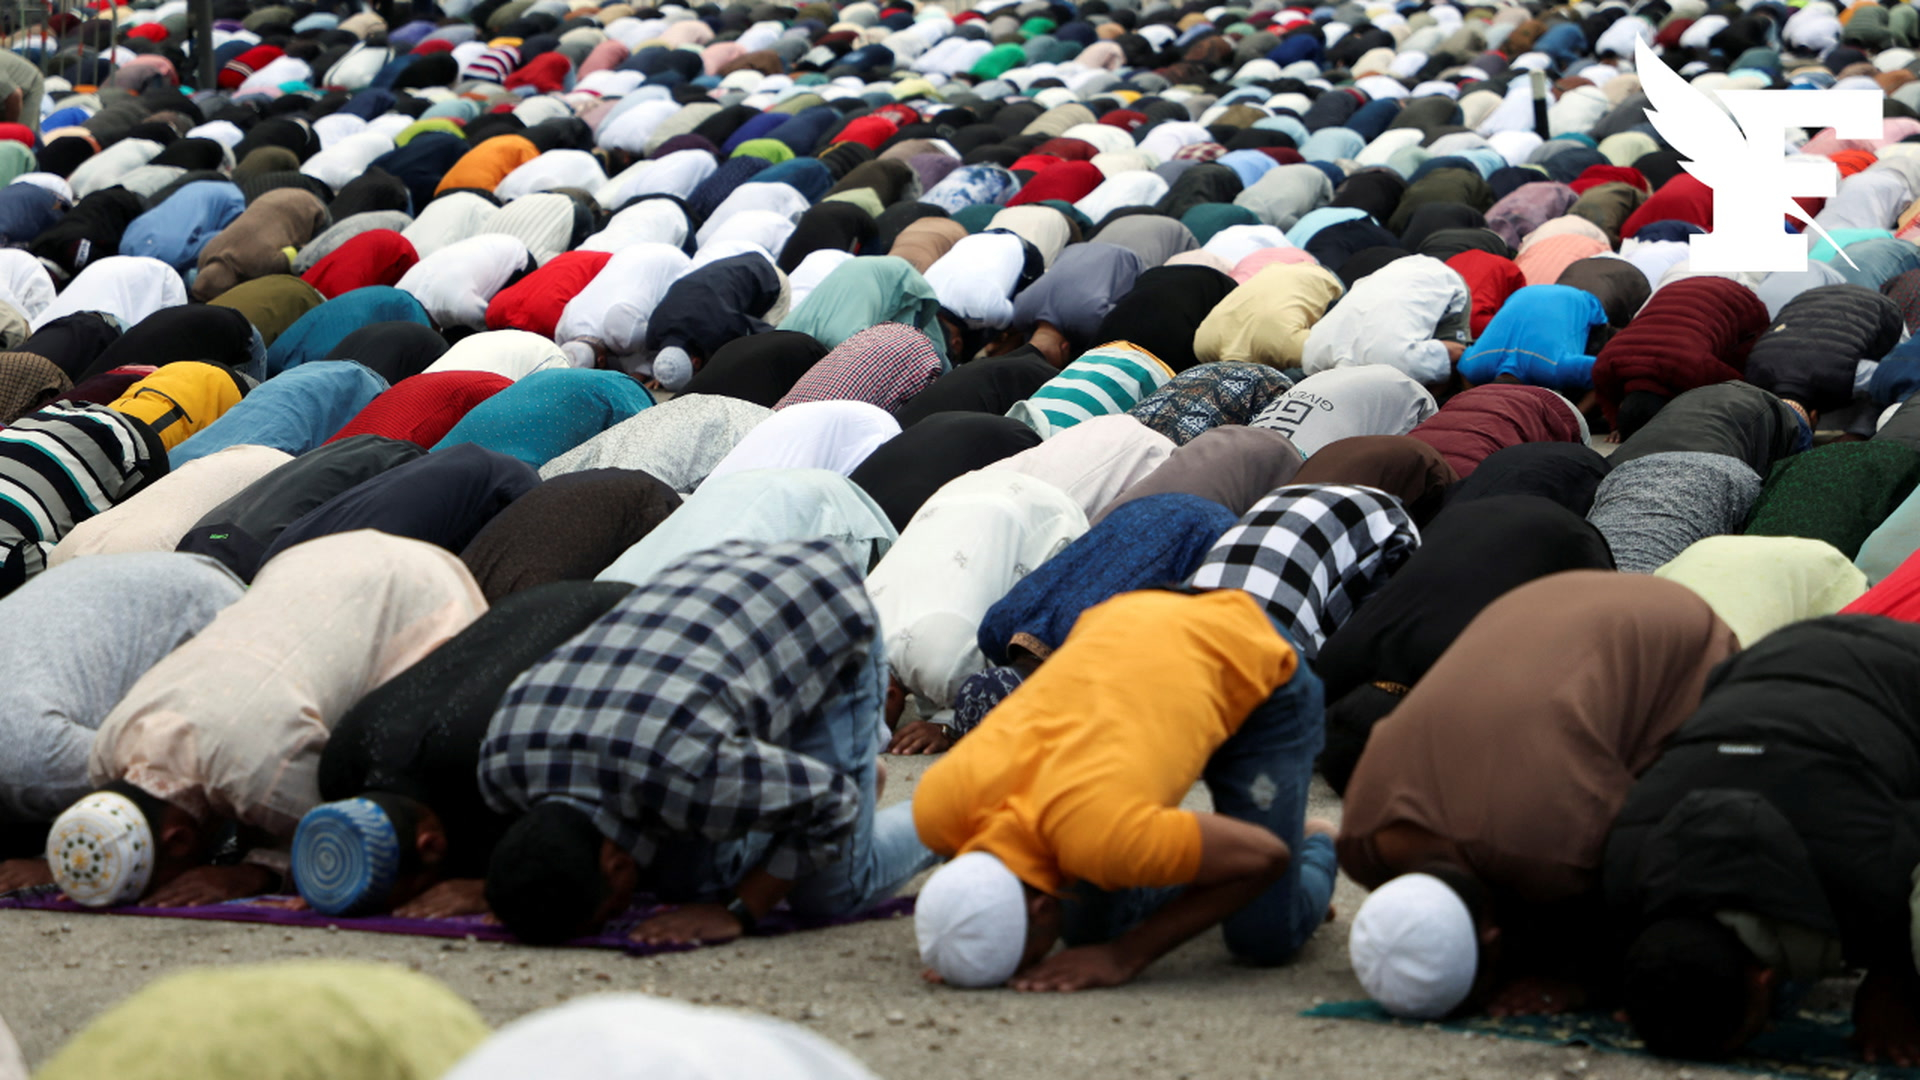 Soutien au Hamas, charia, djihad: une étude sur les musulmans britanniques inquiète